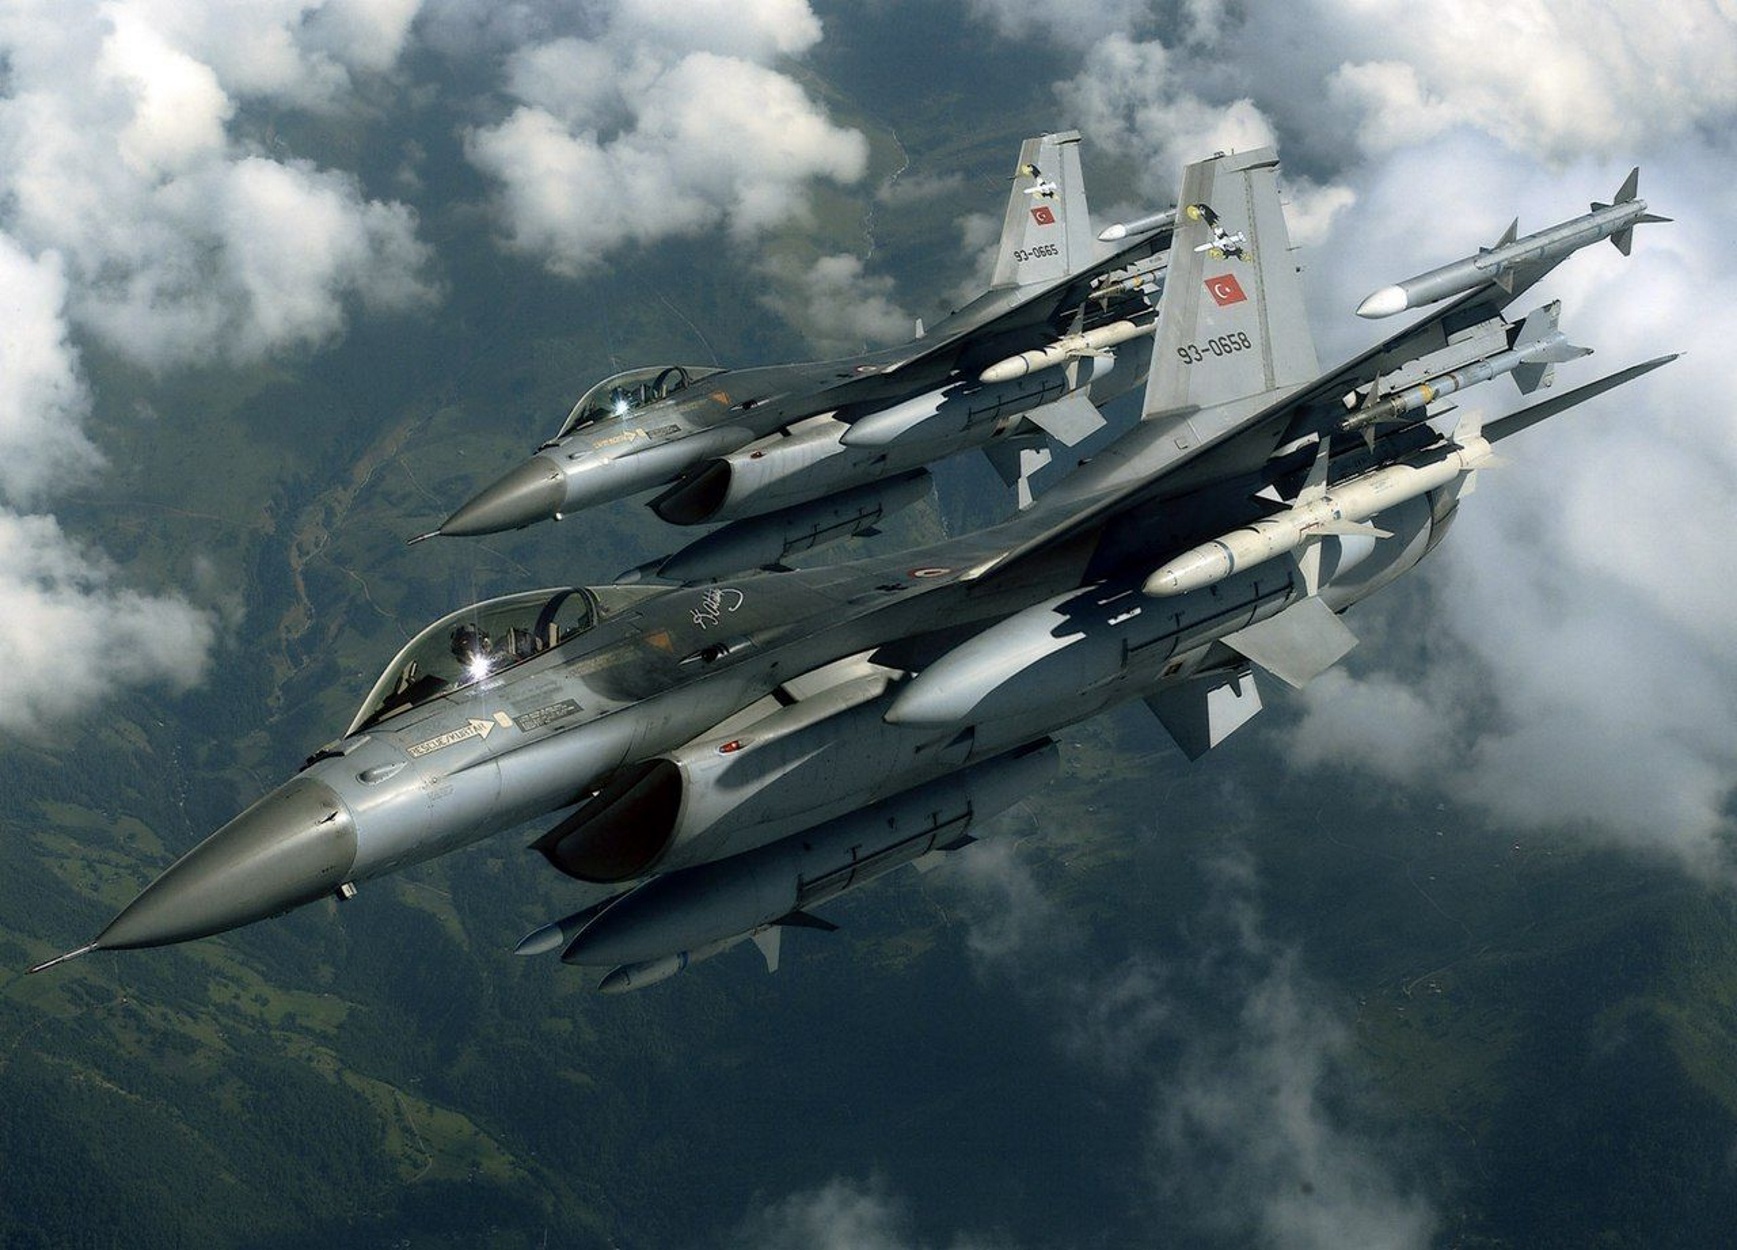 Ρεκόρ τουρκικών προκλήσεων στο Αιγαίο: 126 παραβιάσεις και νέες υπερπτήσεις F-16